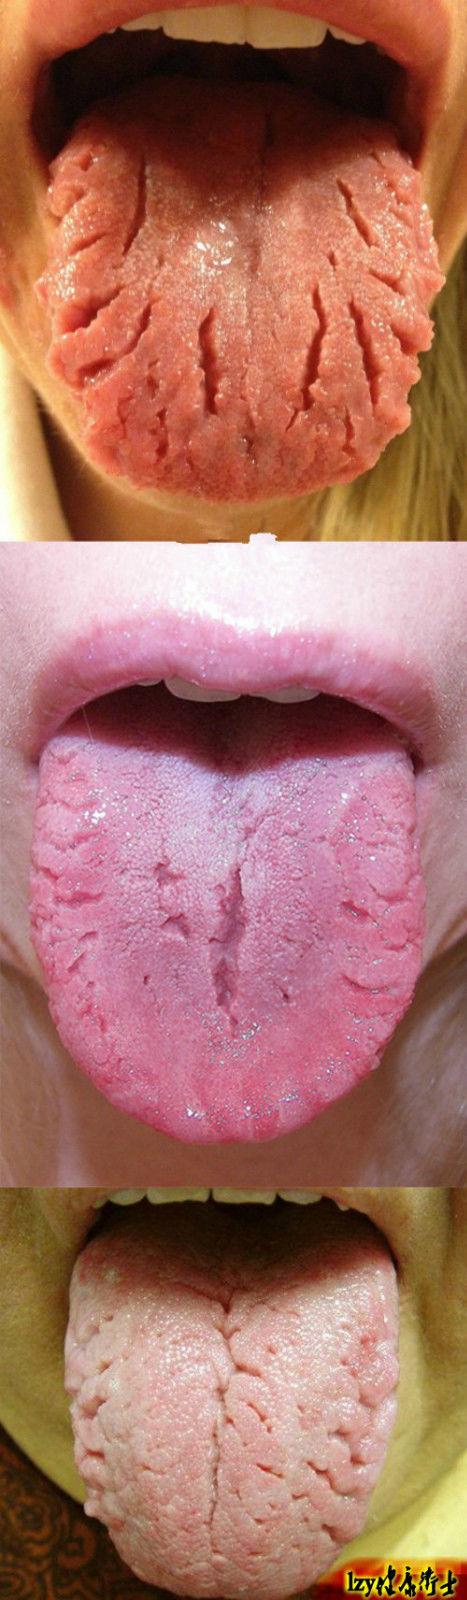 裂纹舌的中医治疗